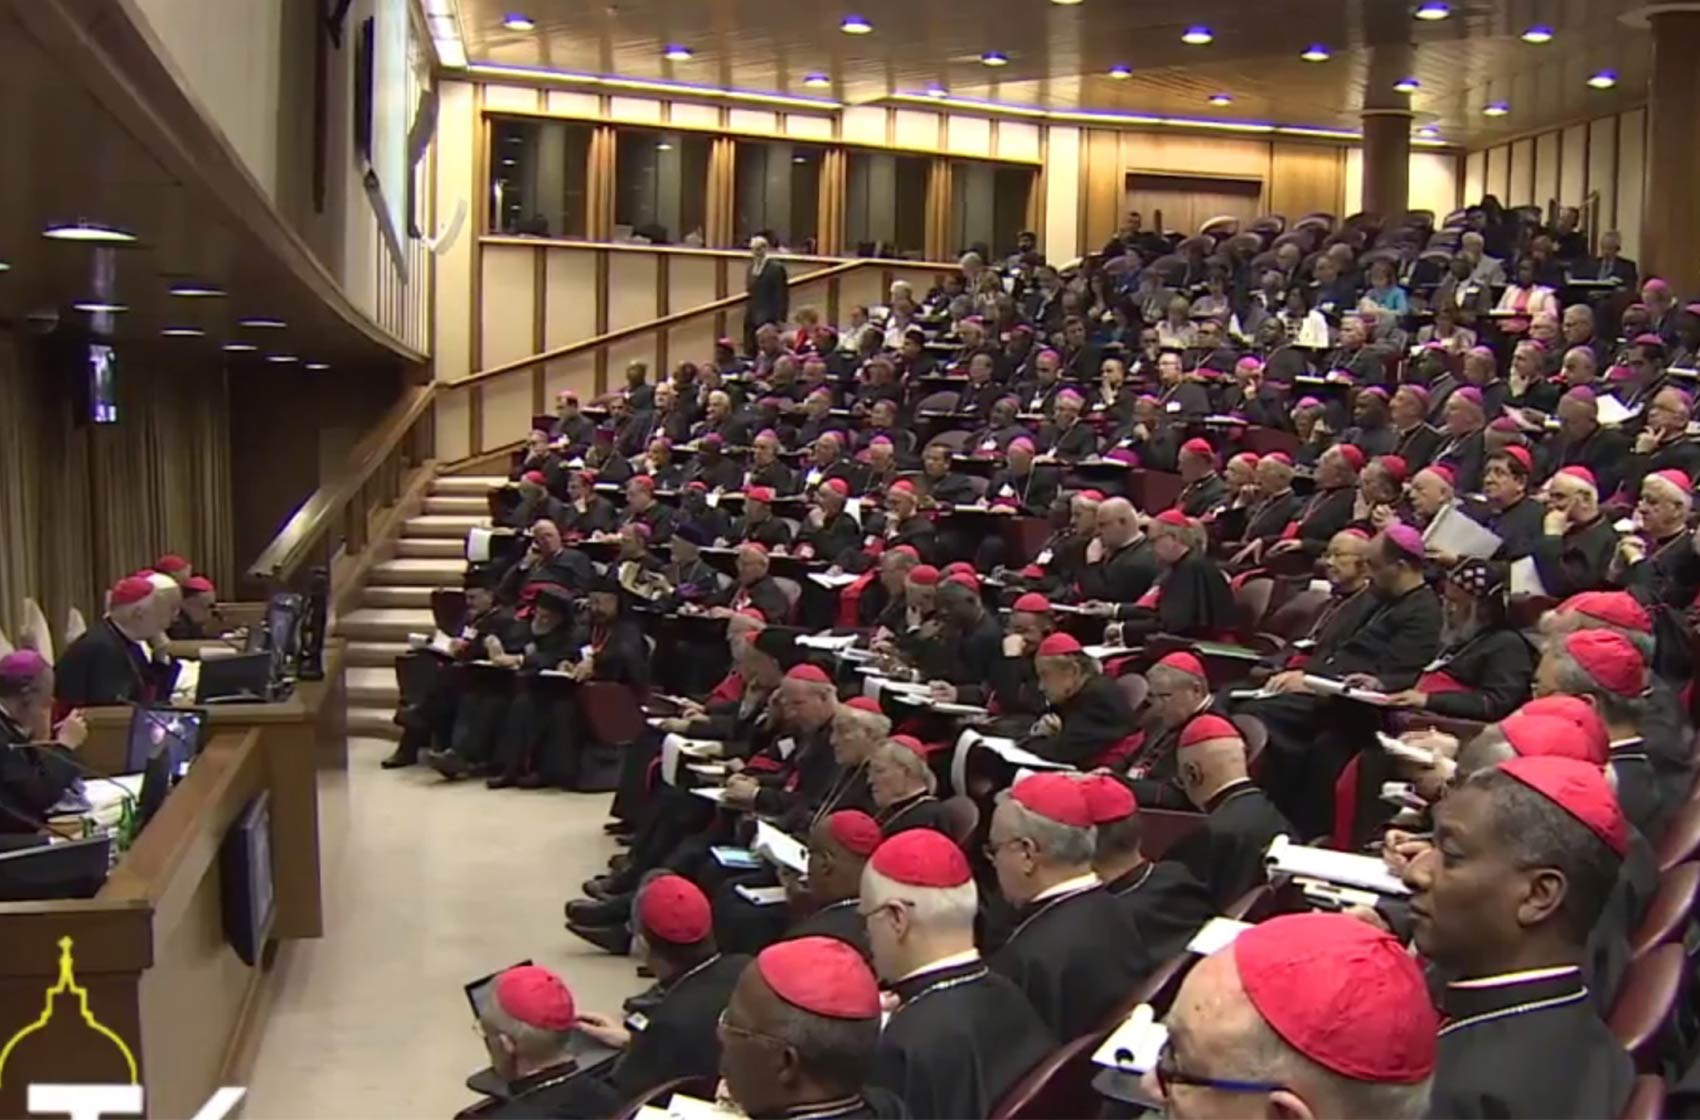 Assemblée du synode des évêques sur les défis pastoraux de la famille,
réunie au Vatican, octobre 2014. Centro Televisivo Vaticano (CC BY 3.0) 